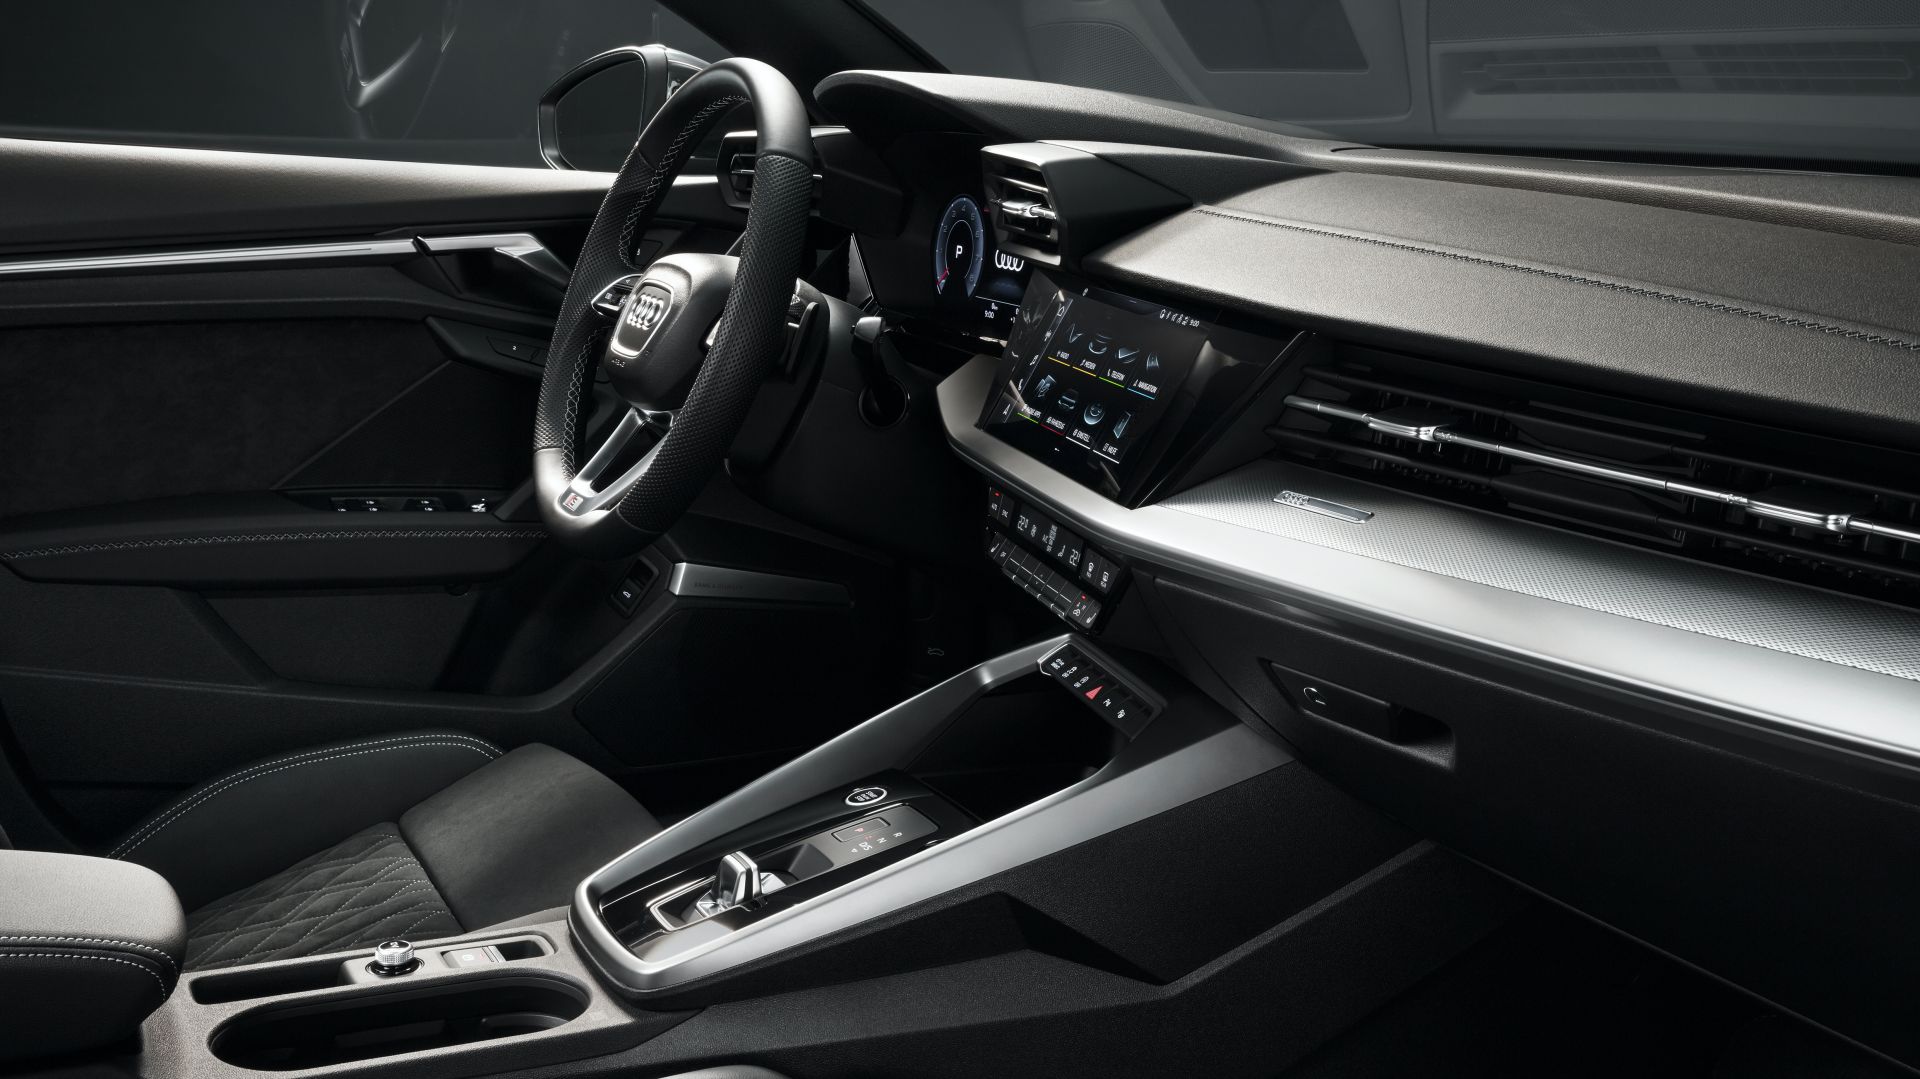 2020 Audi A3 Sedan tanıtıldı: Yeni tasarım ve gelişmiş teknolojiler